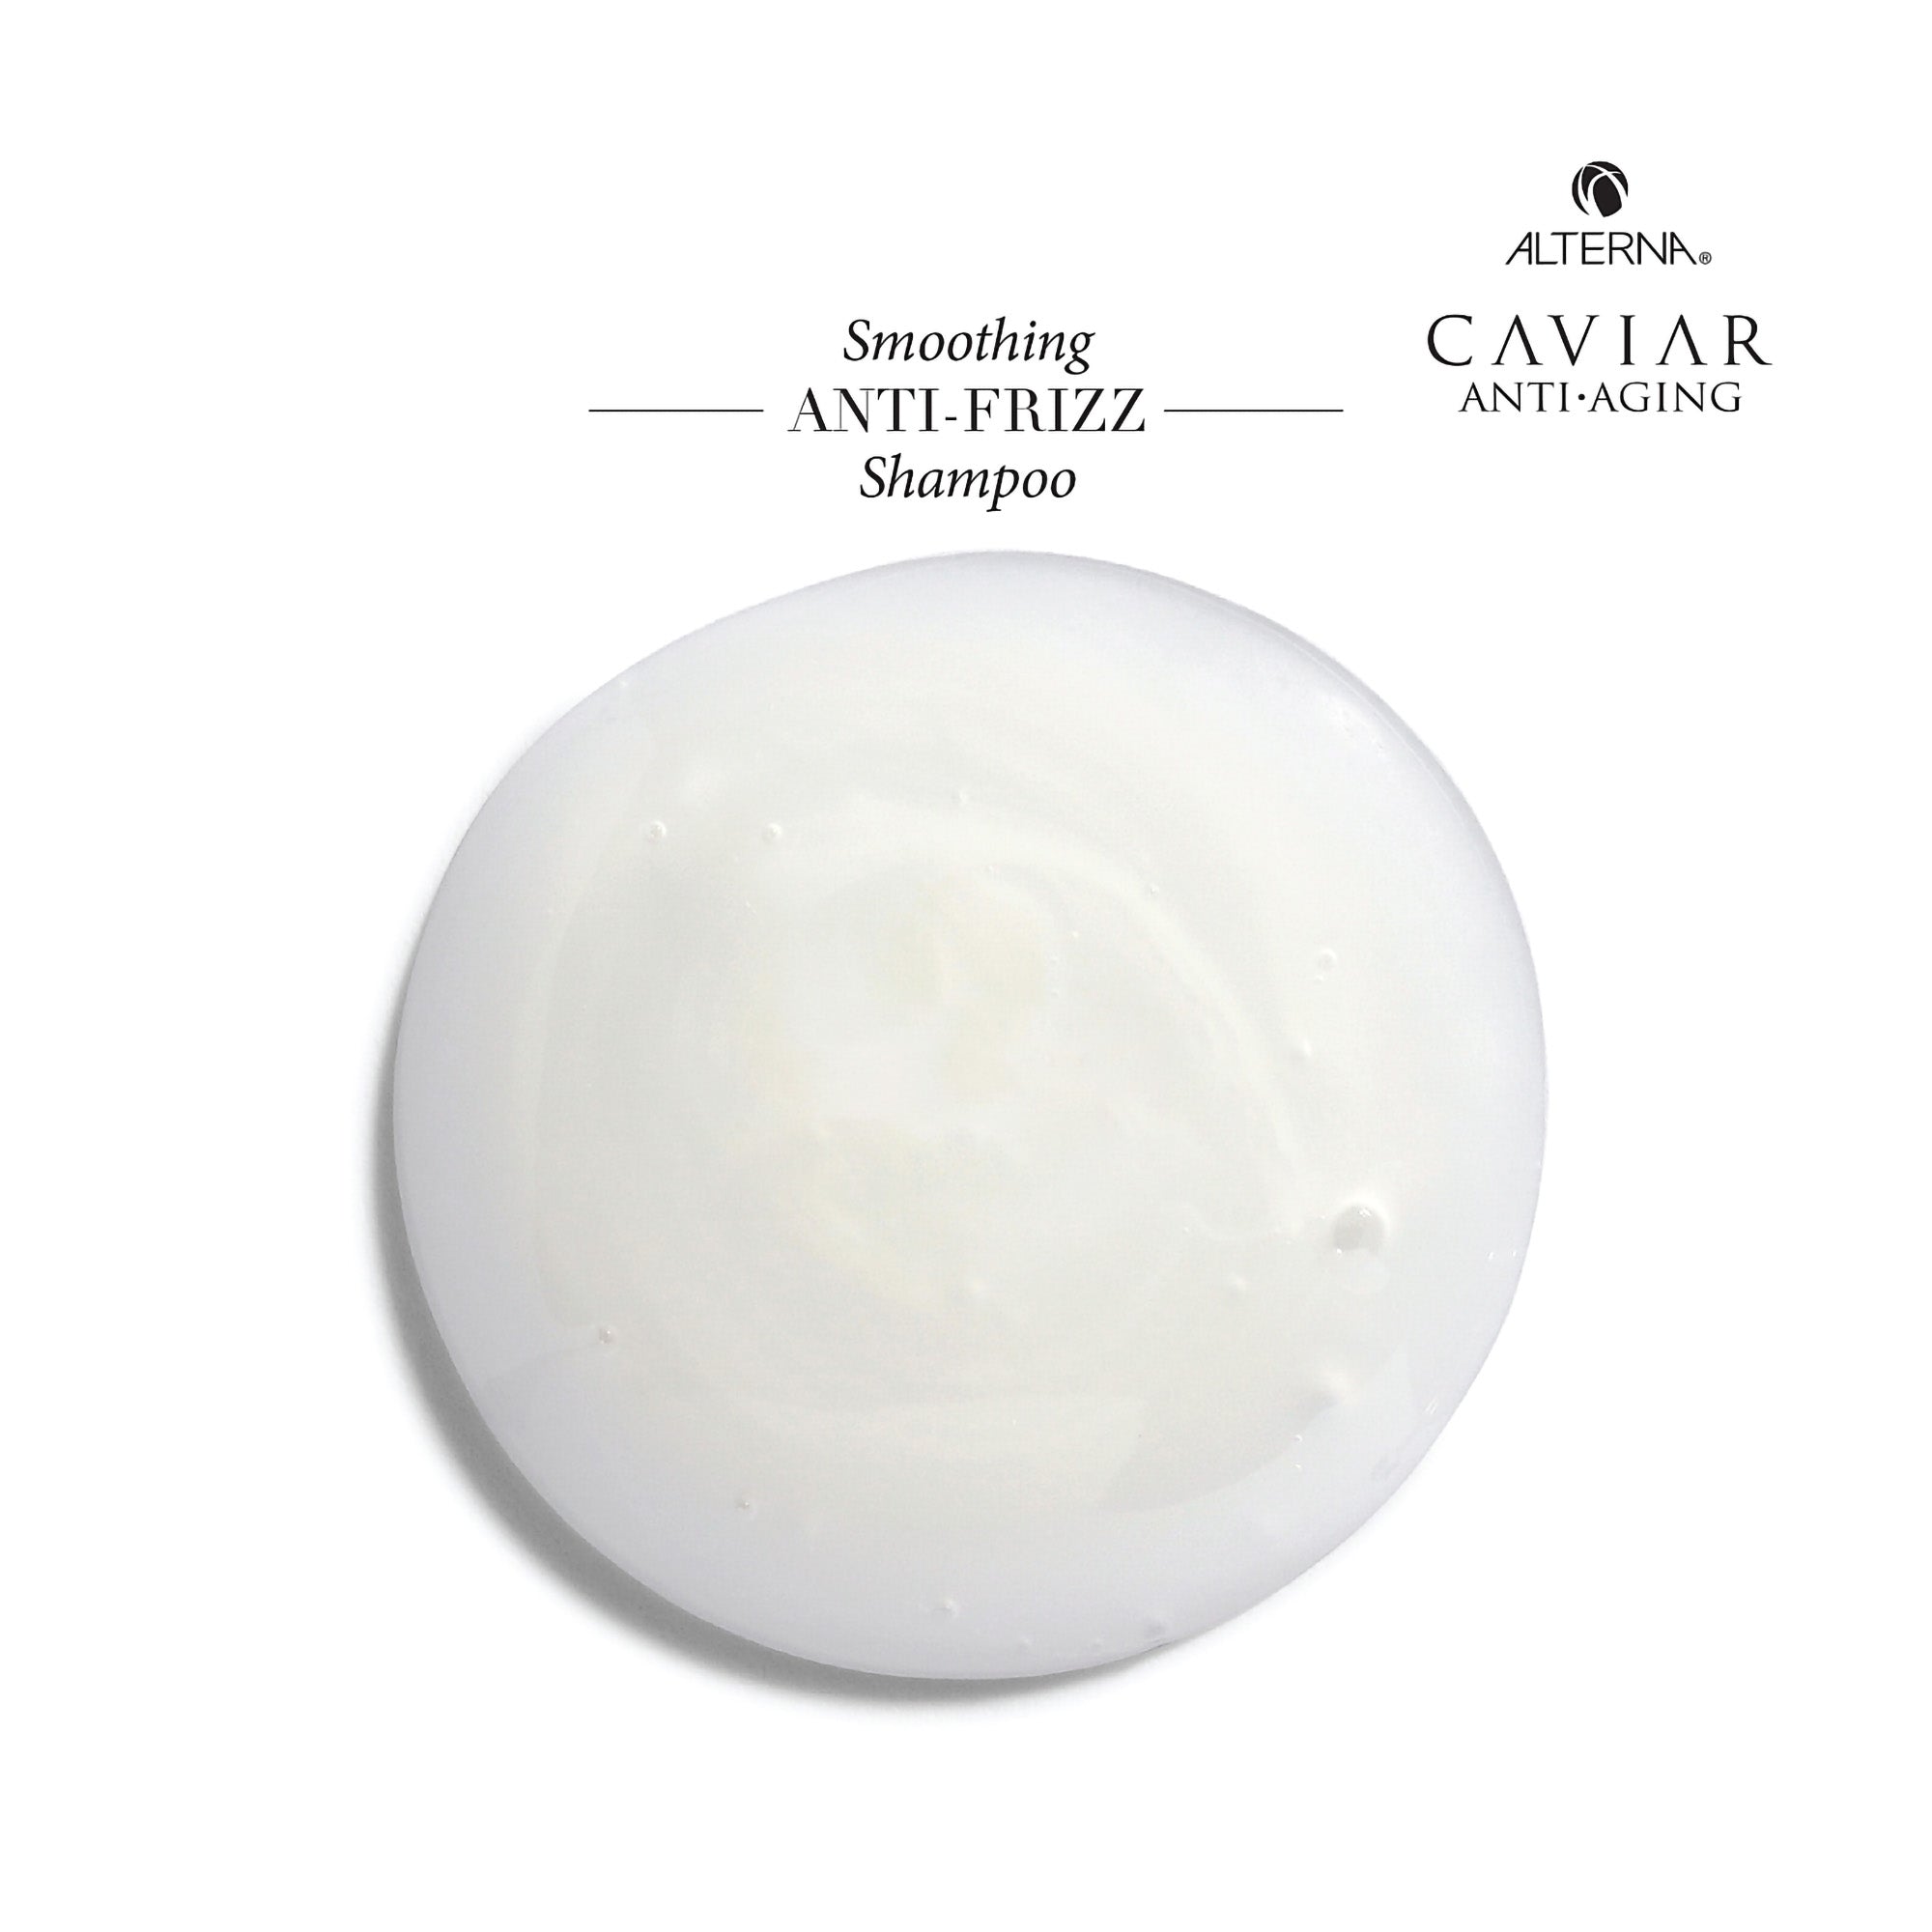 Alterna Caviar Anti-Aging Smoothing Anti-Frizz Shampoo / 16.5OZ